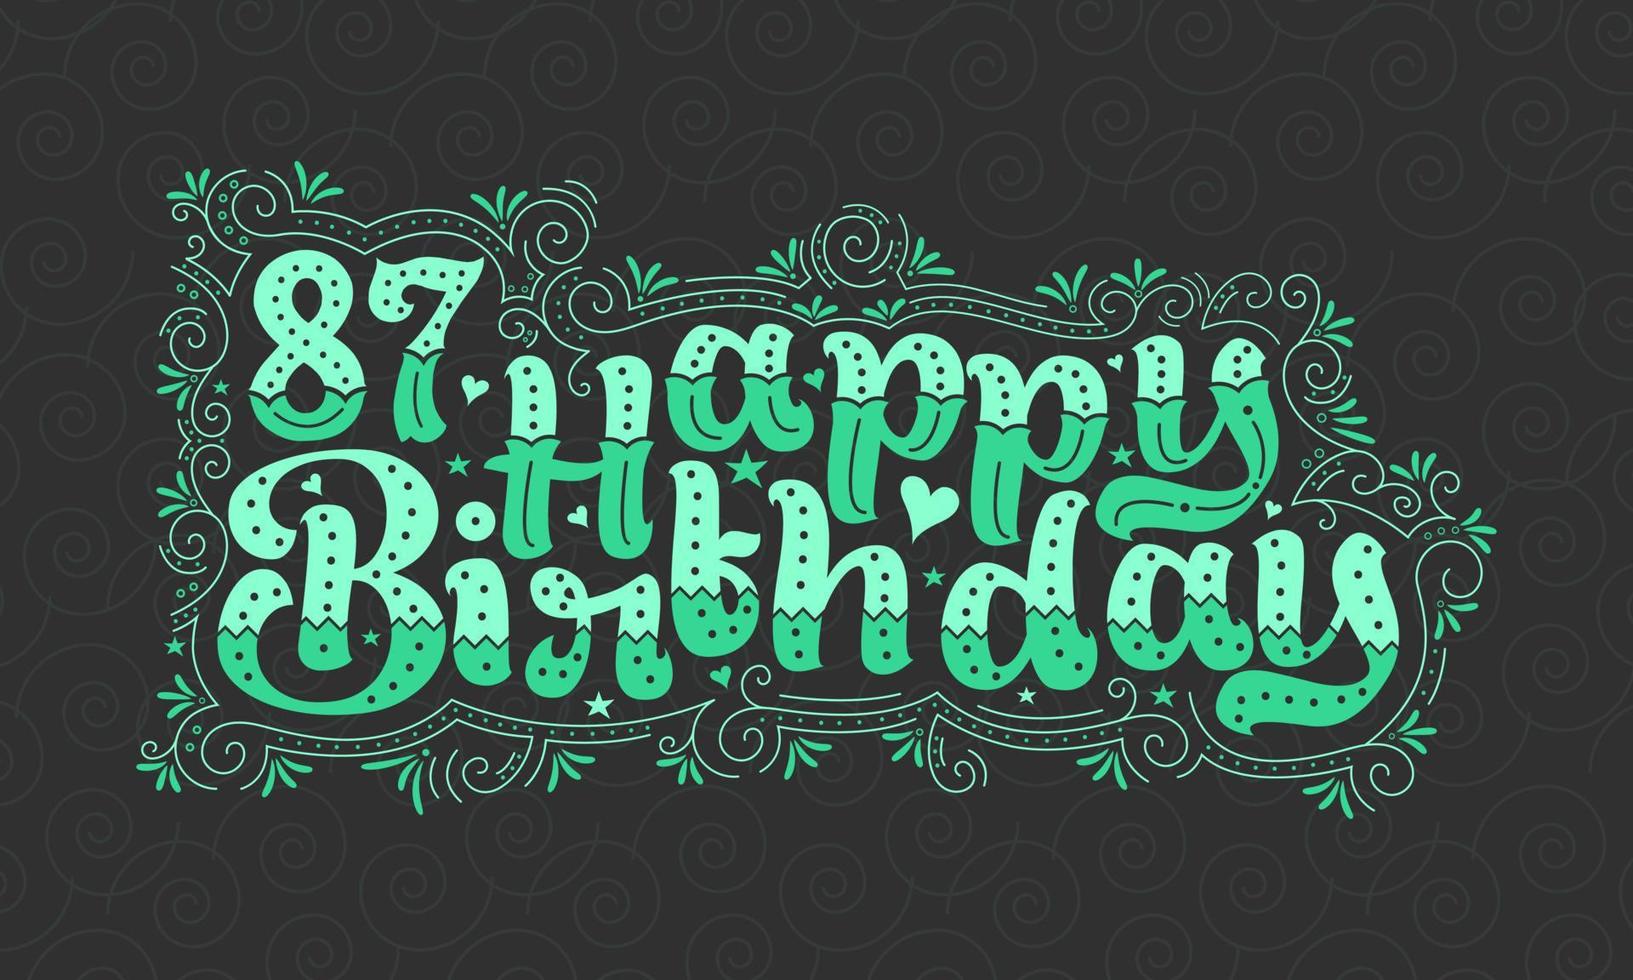 87th letras de feliz aniversário, 87 anos de aniversário lindo design de tipografia com pontos verdes, linhas e folhas. vetor